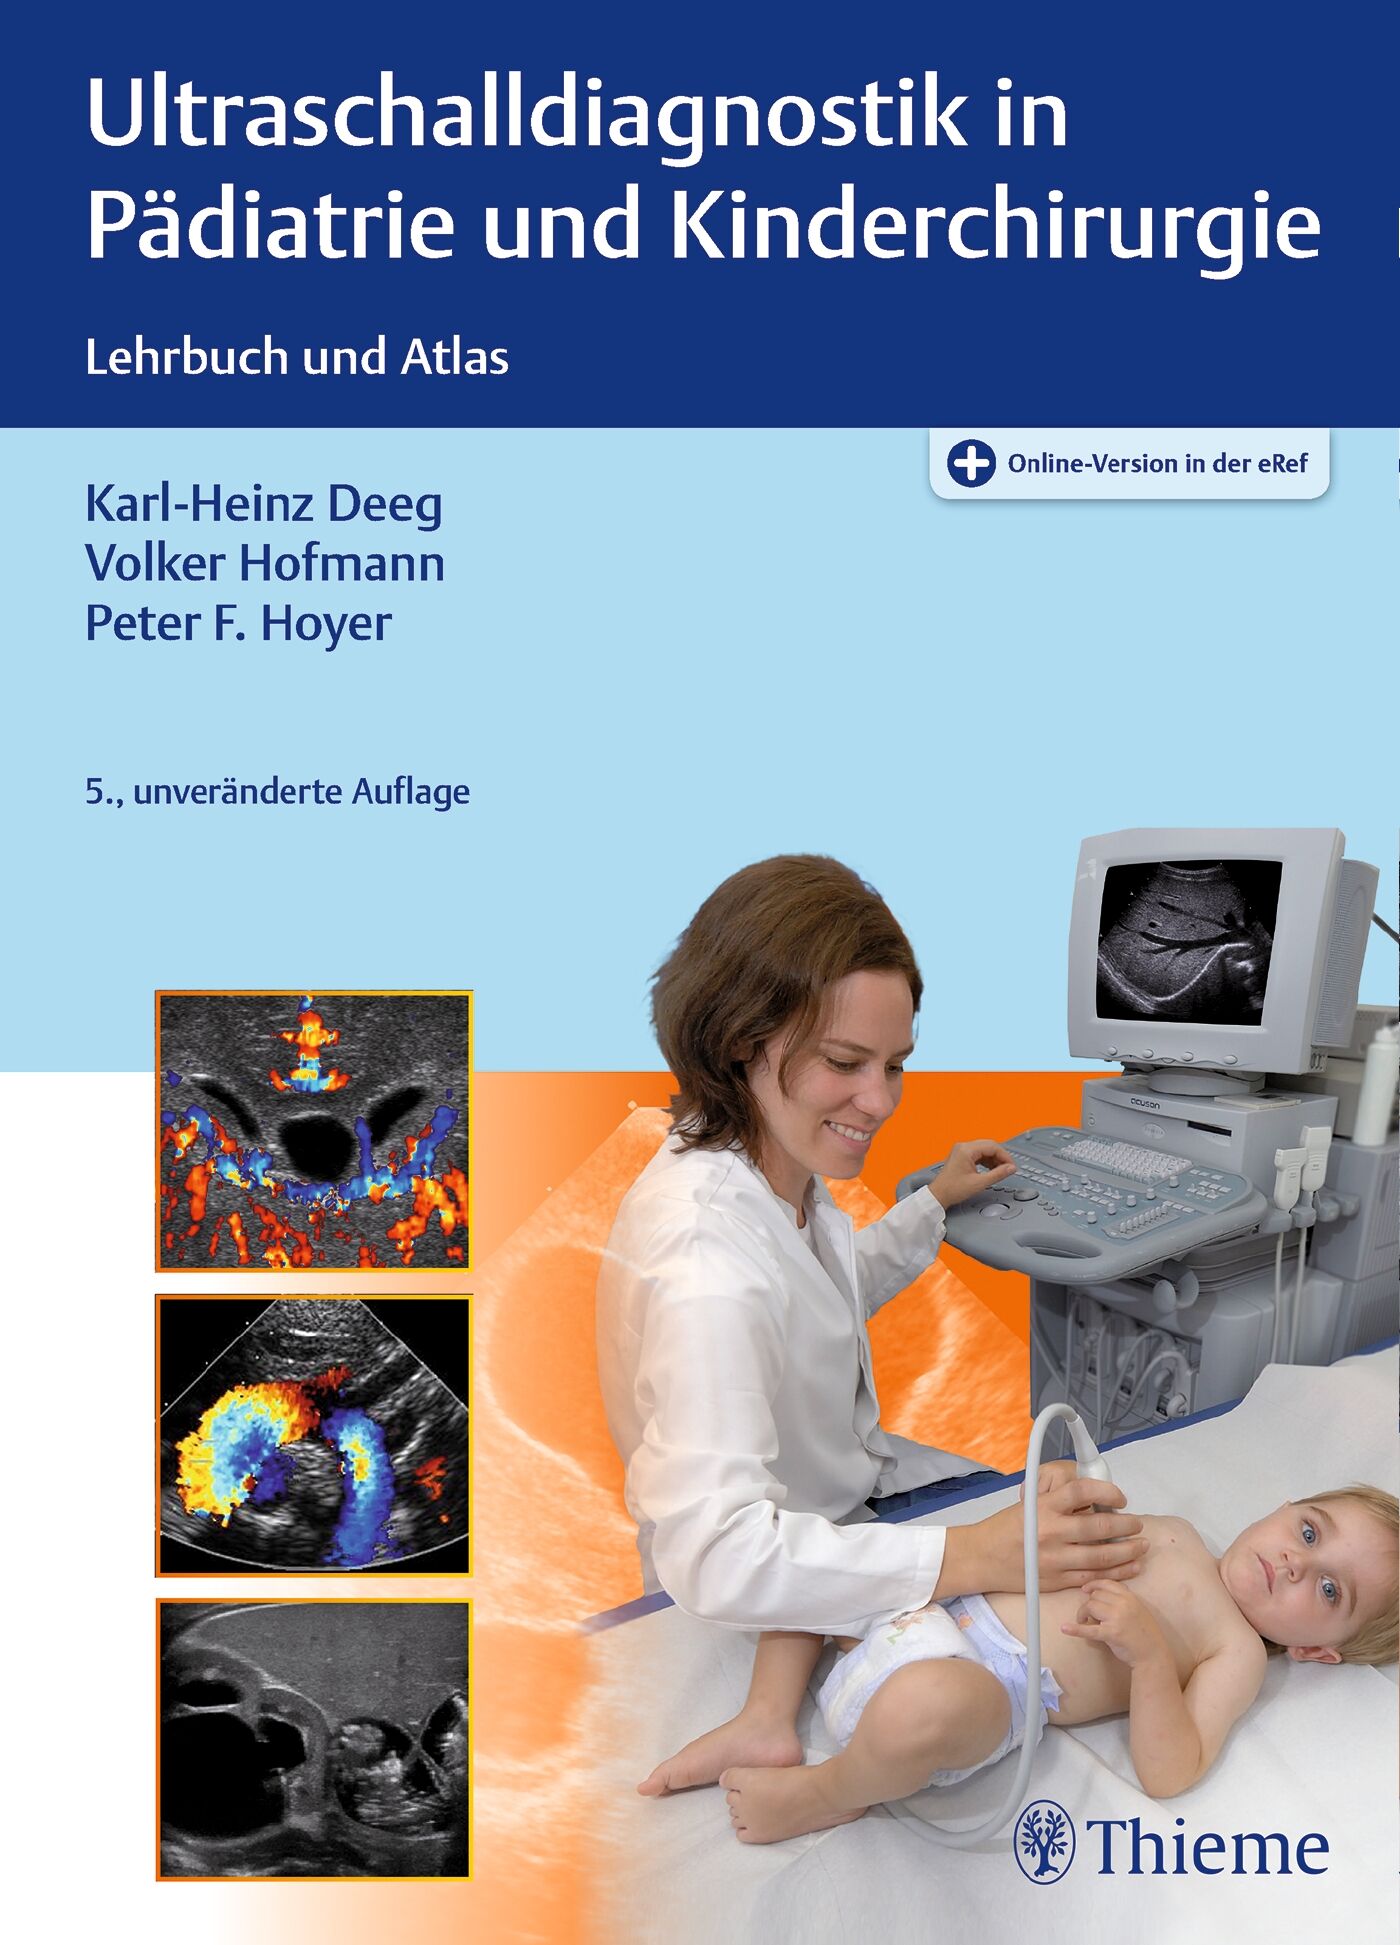 Ultraschalldiagnostik in Pädiatrie und Kinderchirurgie, 9783132424678